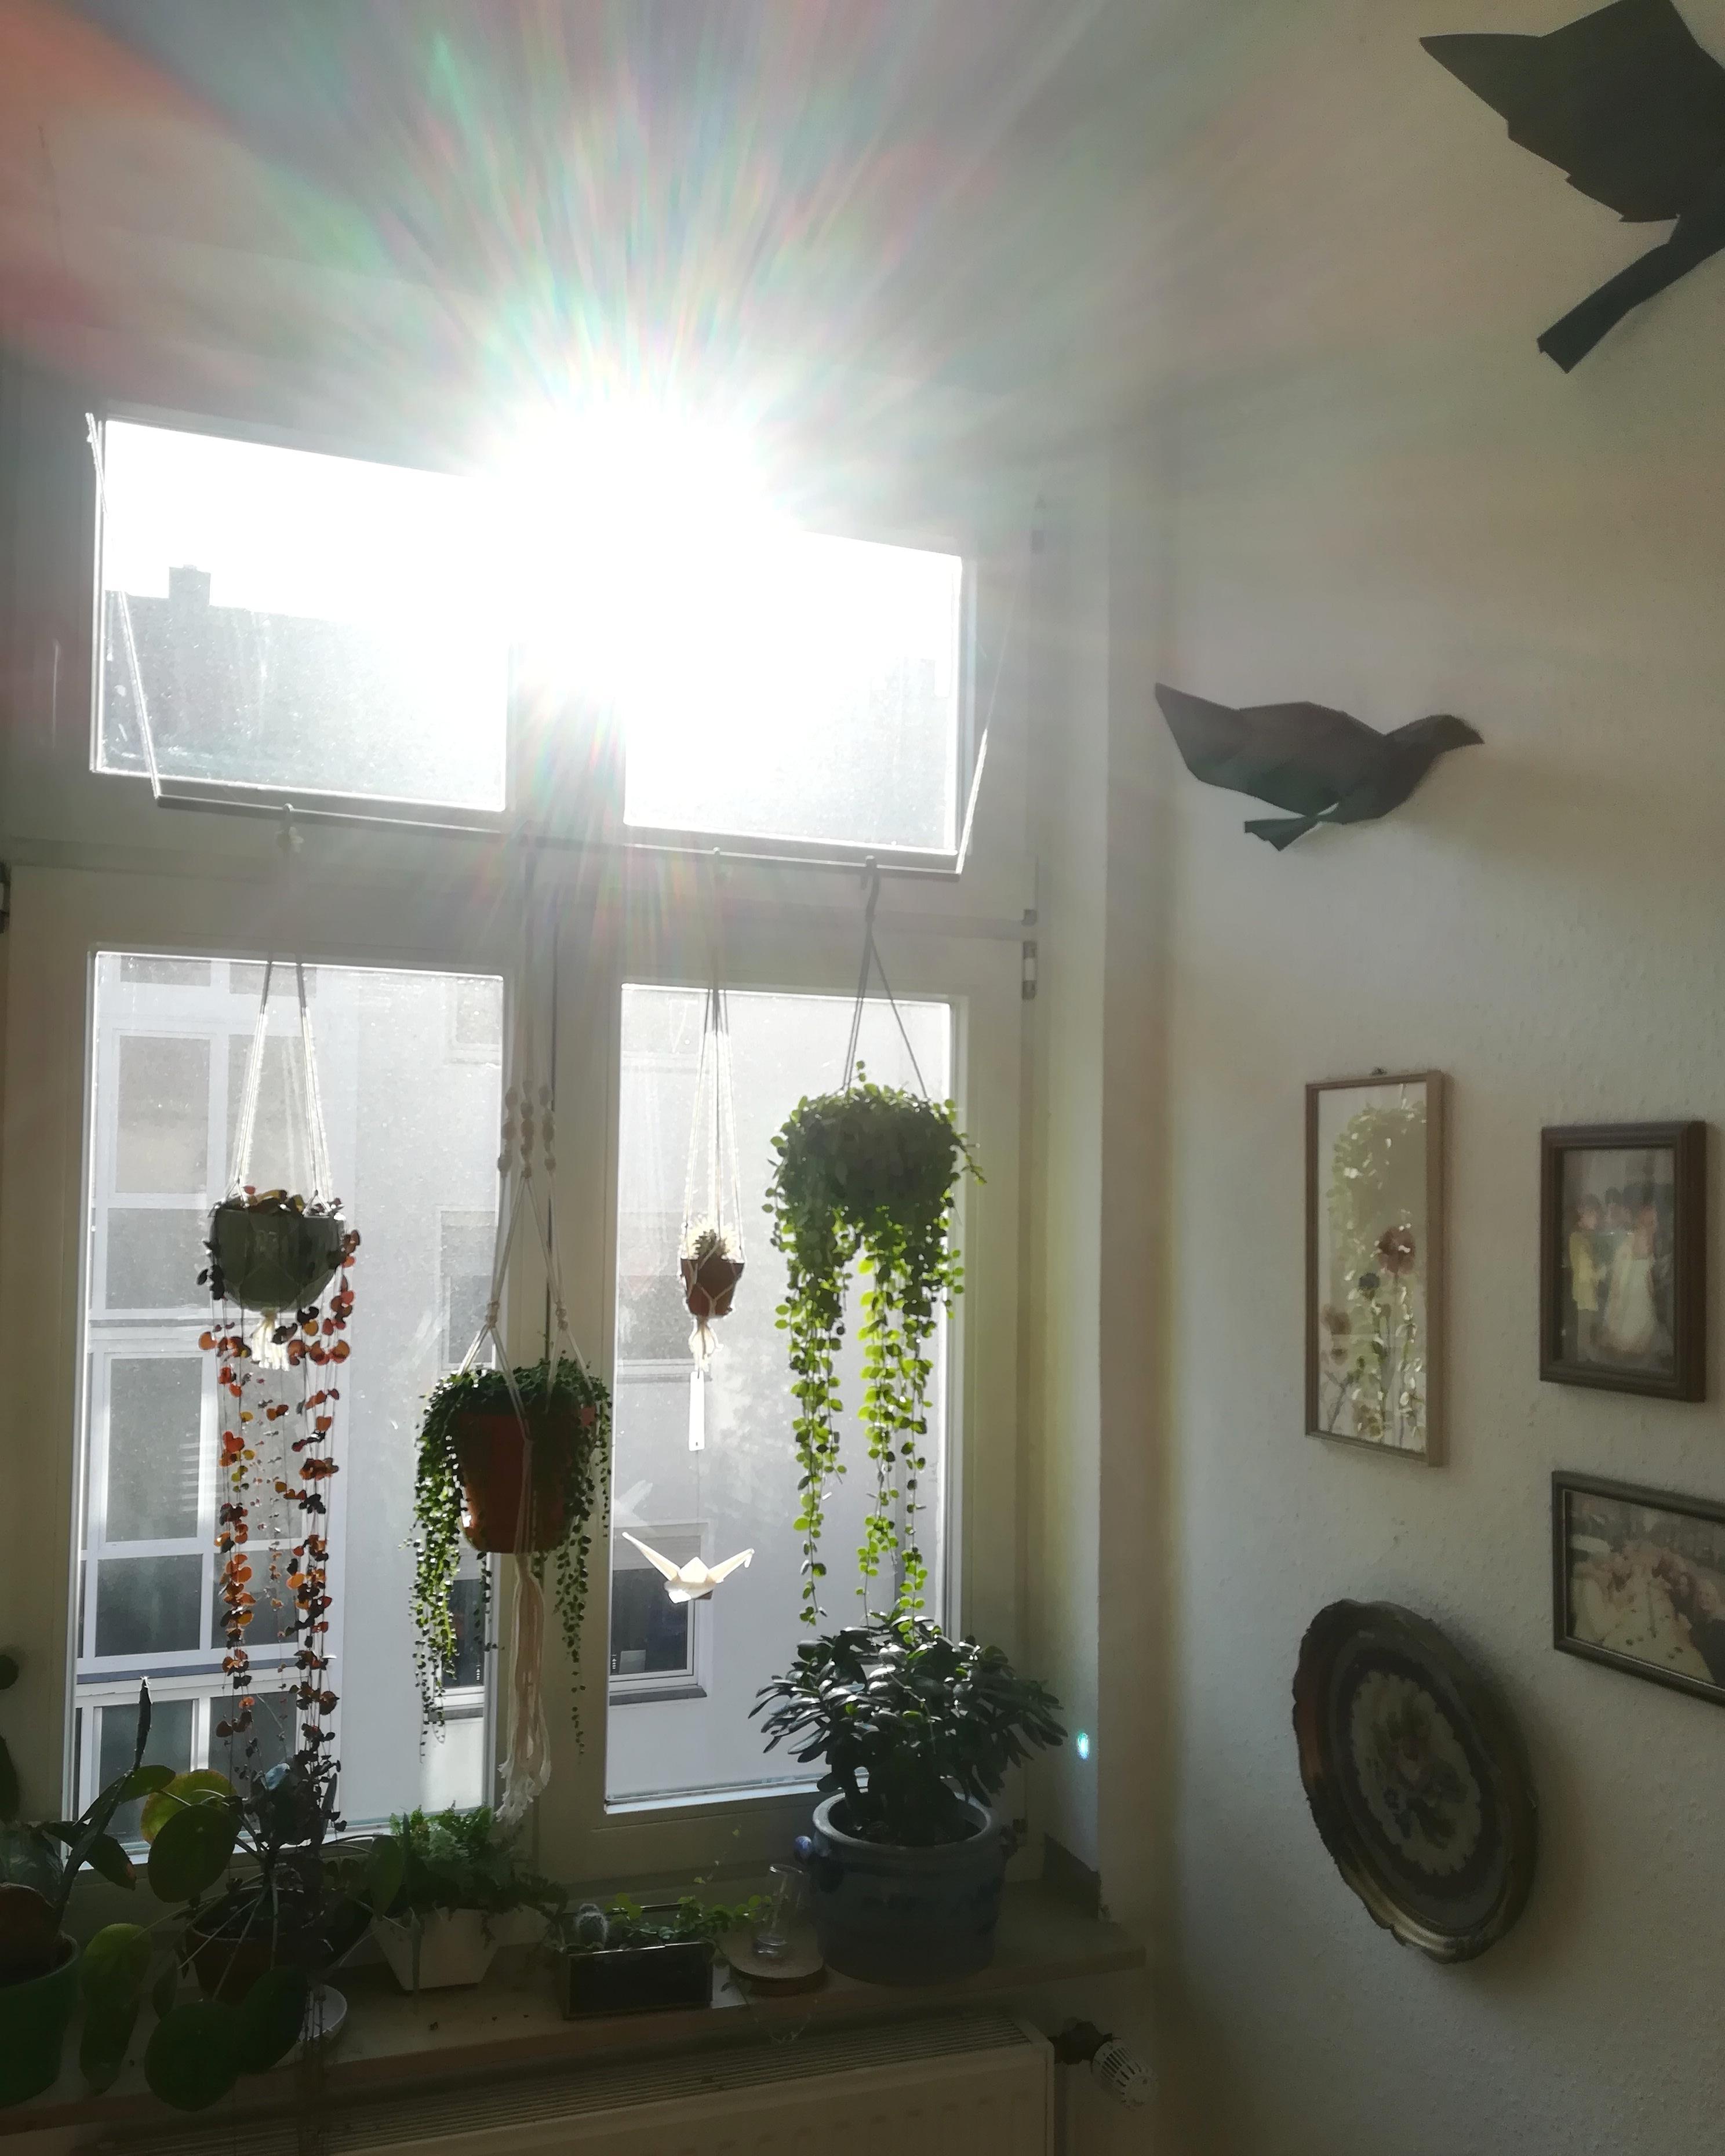 Heute habe ich die #Morgenstimmung in unserem #Wohnzimmer fest gehalten. #plant #pflanzen #ausblick #hängepflanze 